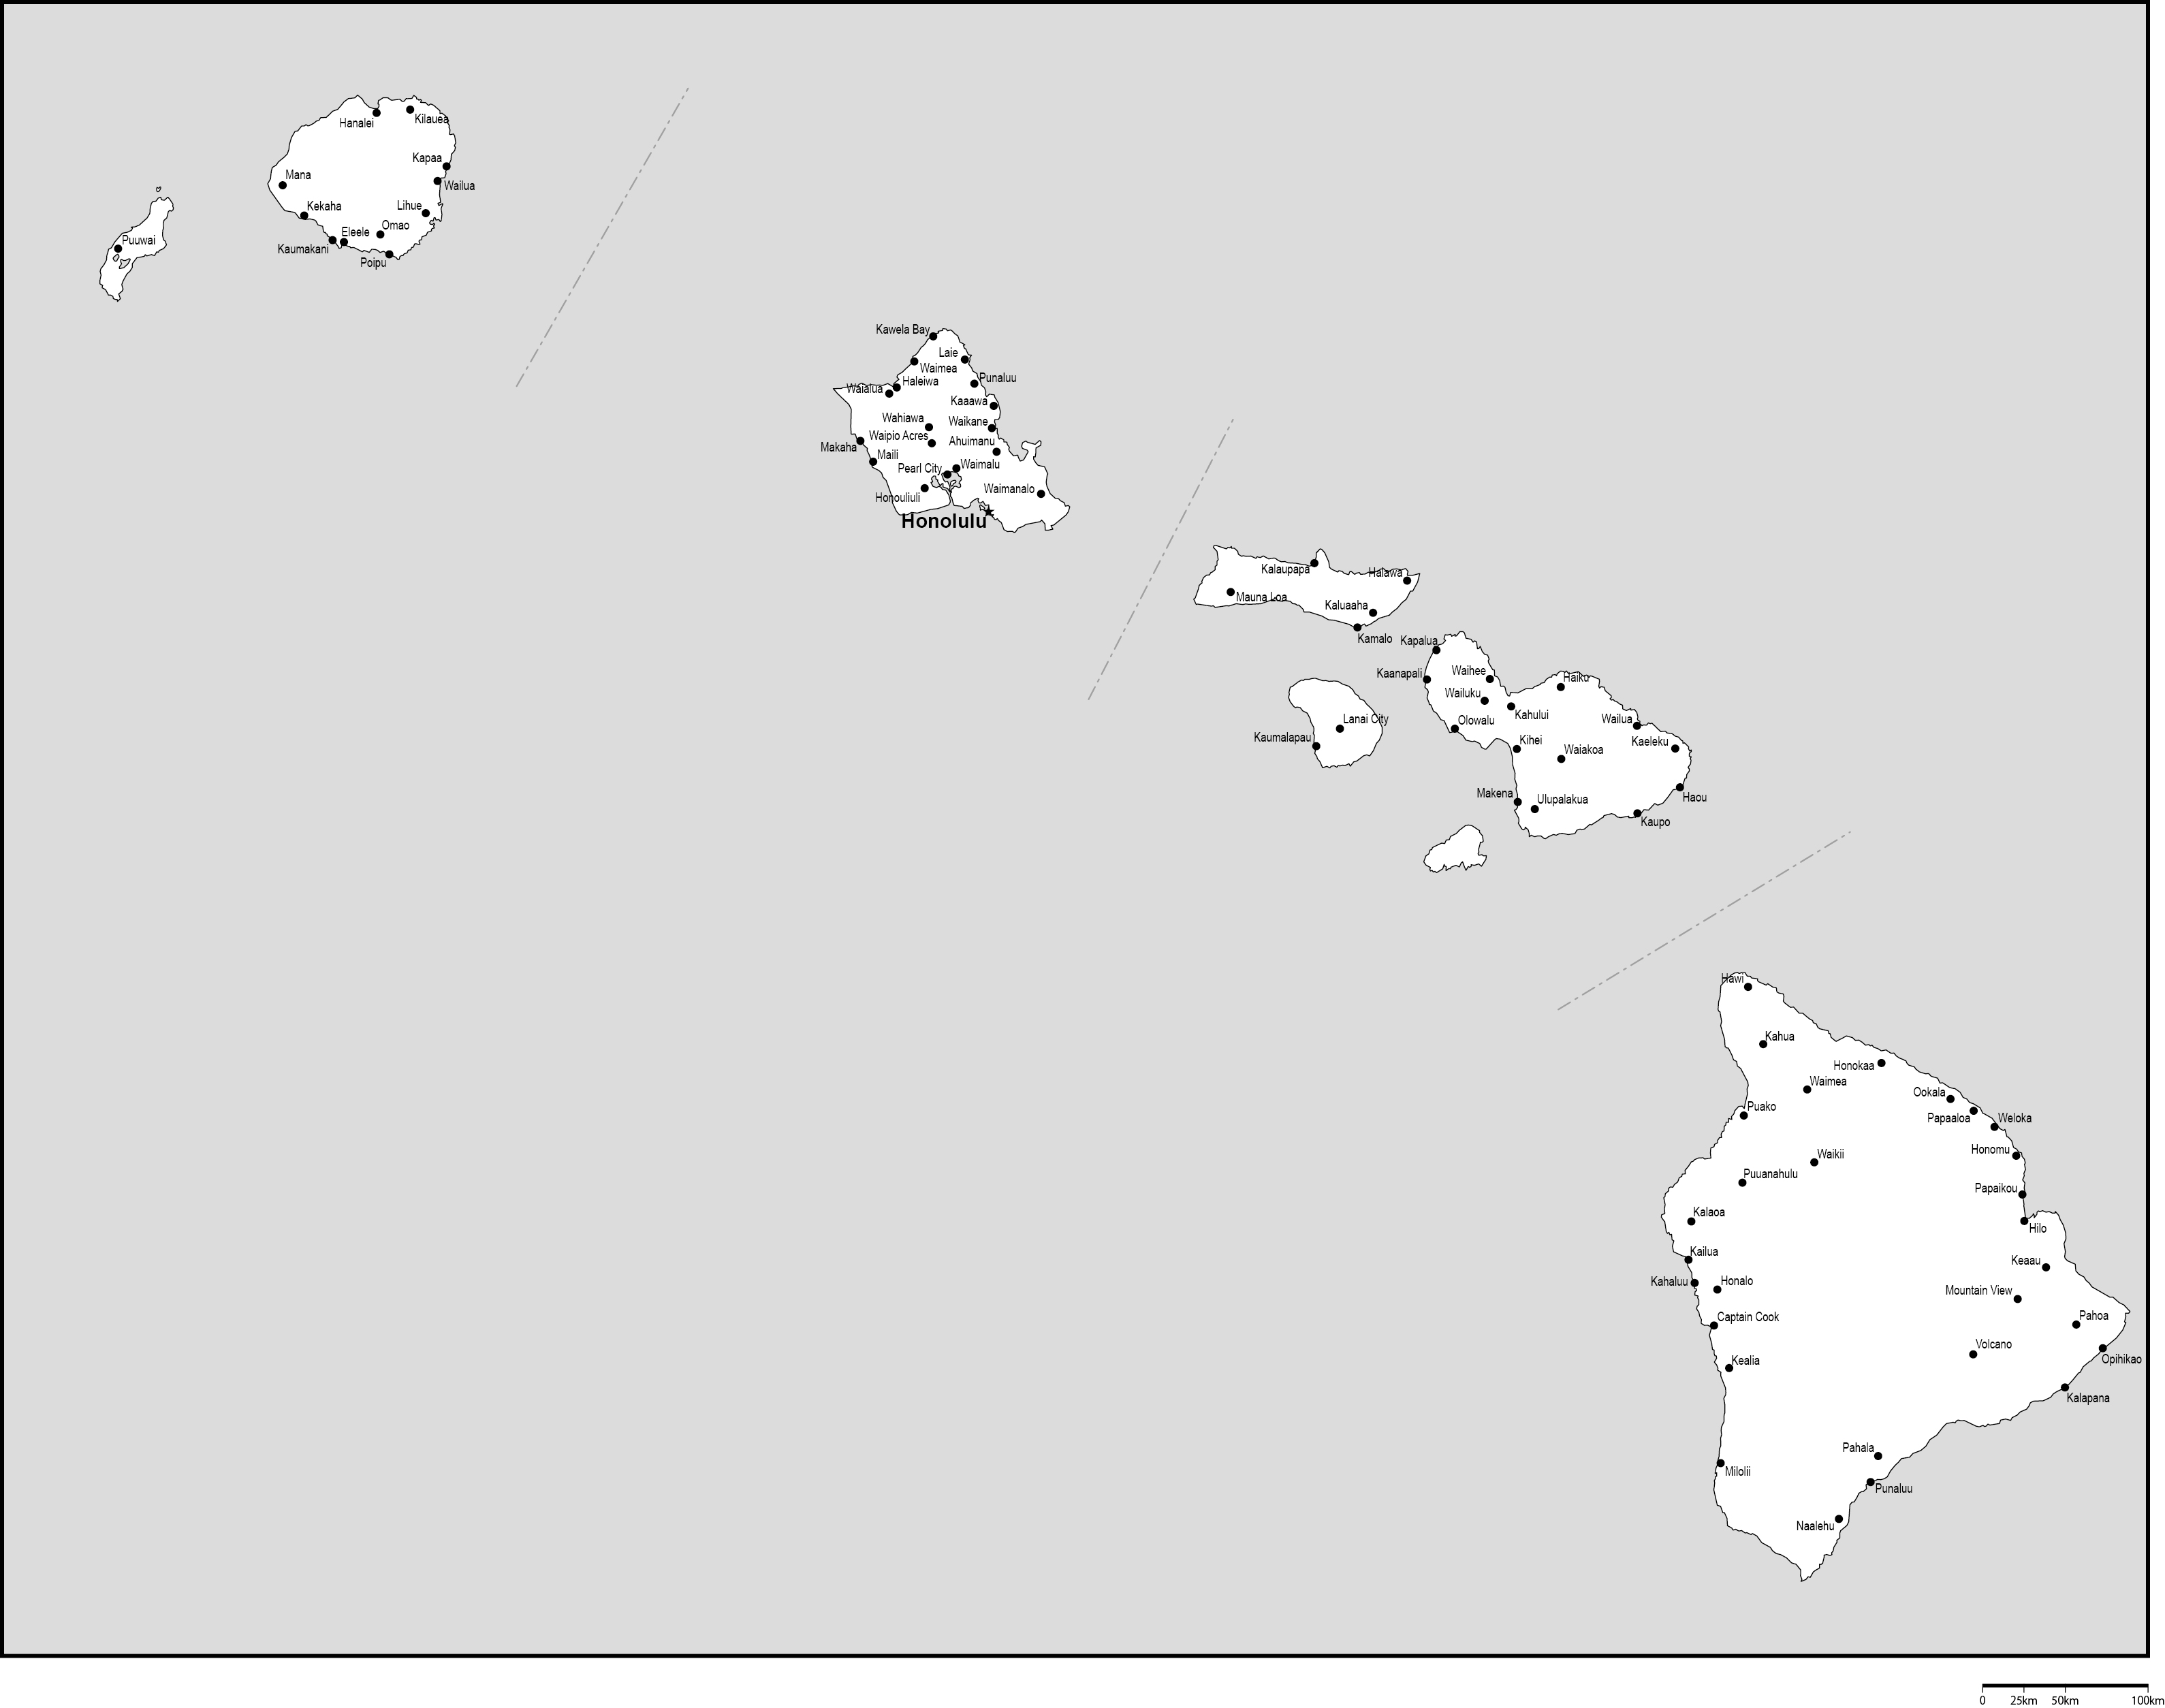 ハワイ州郡分け白地図州都・主な都市あり(英語)フリーデータの画像